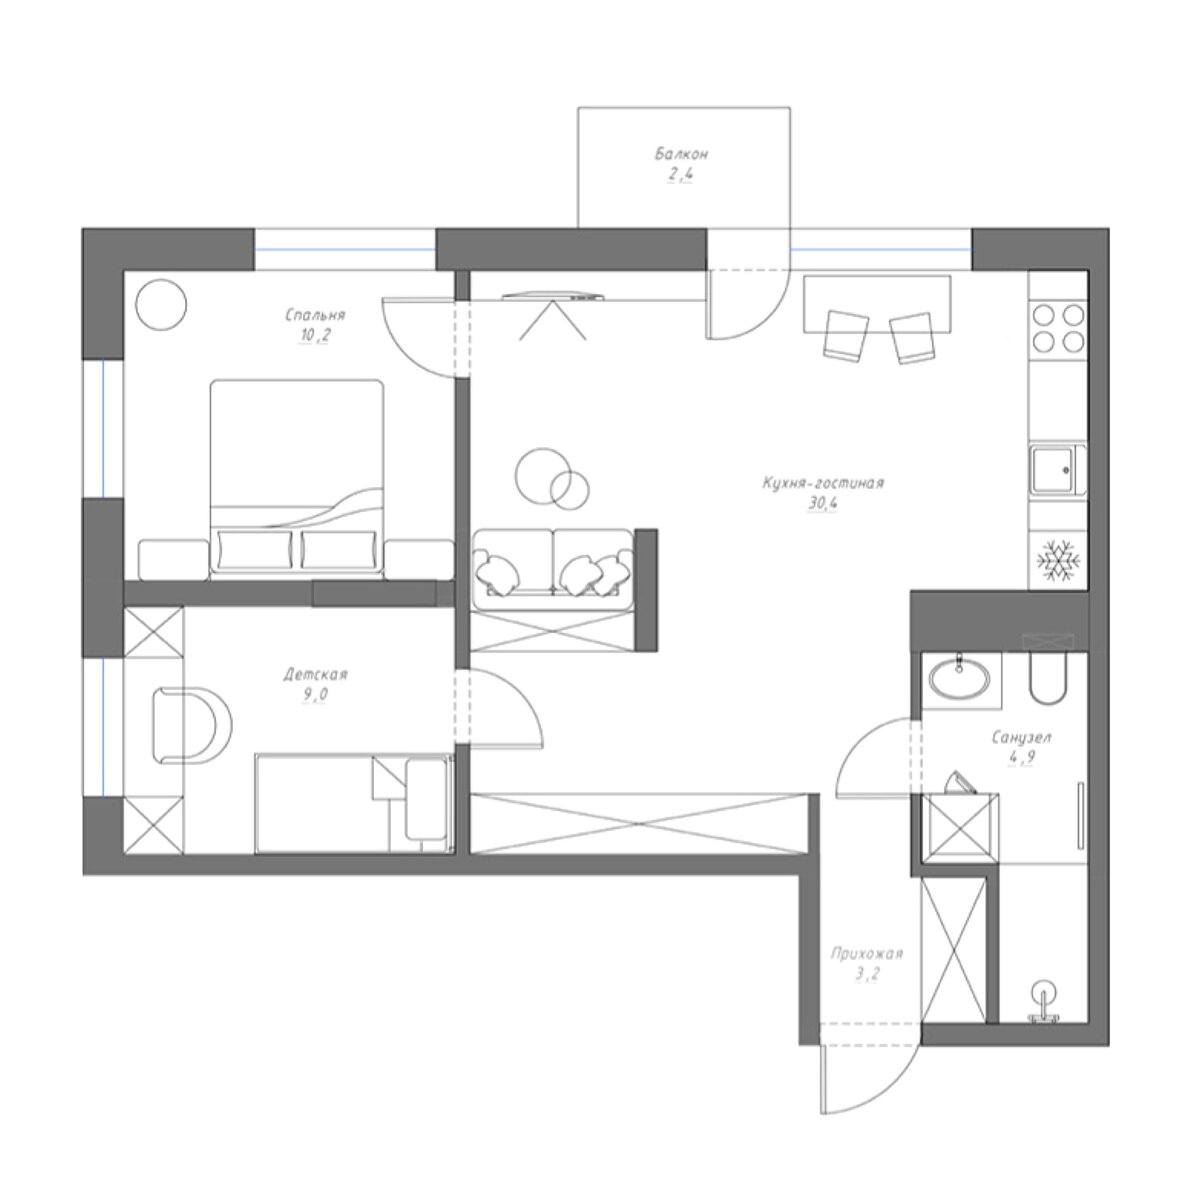 Яркая квартира для семейной пары с гостиной в нише и душевой в кладовке на 58кв.м идеи для дома,интерьер и дизайн